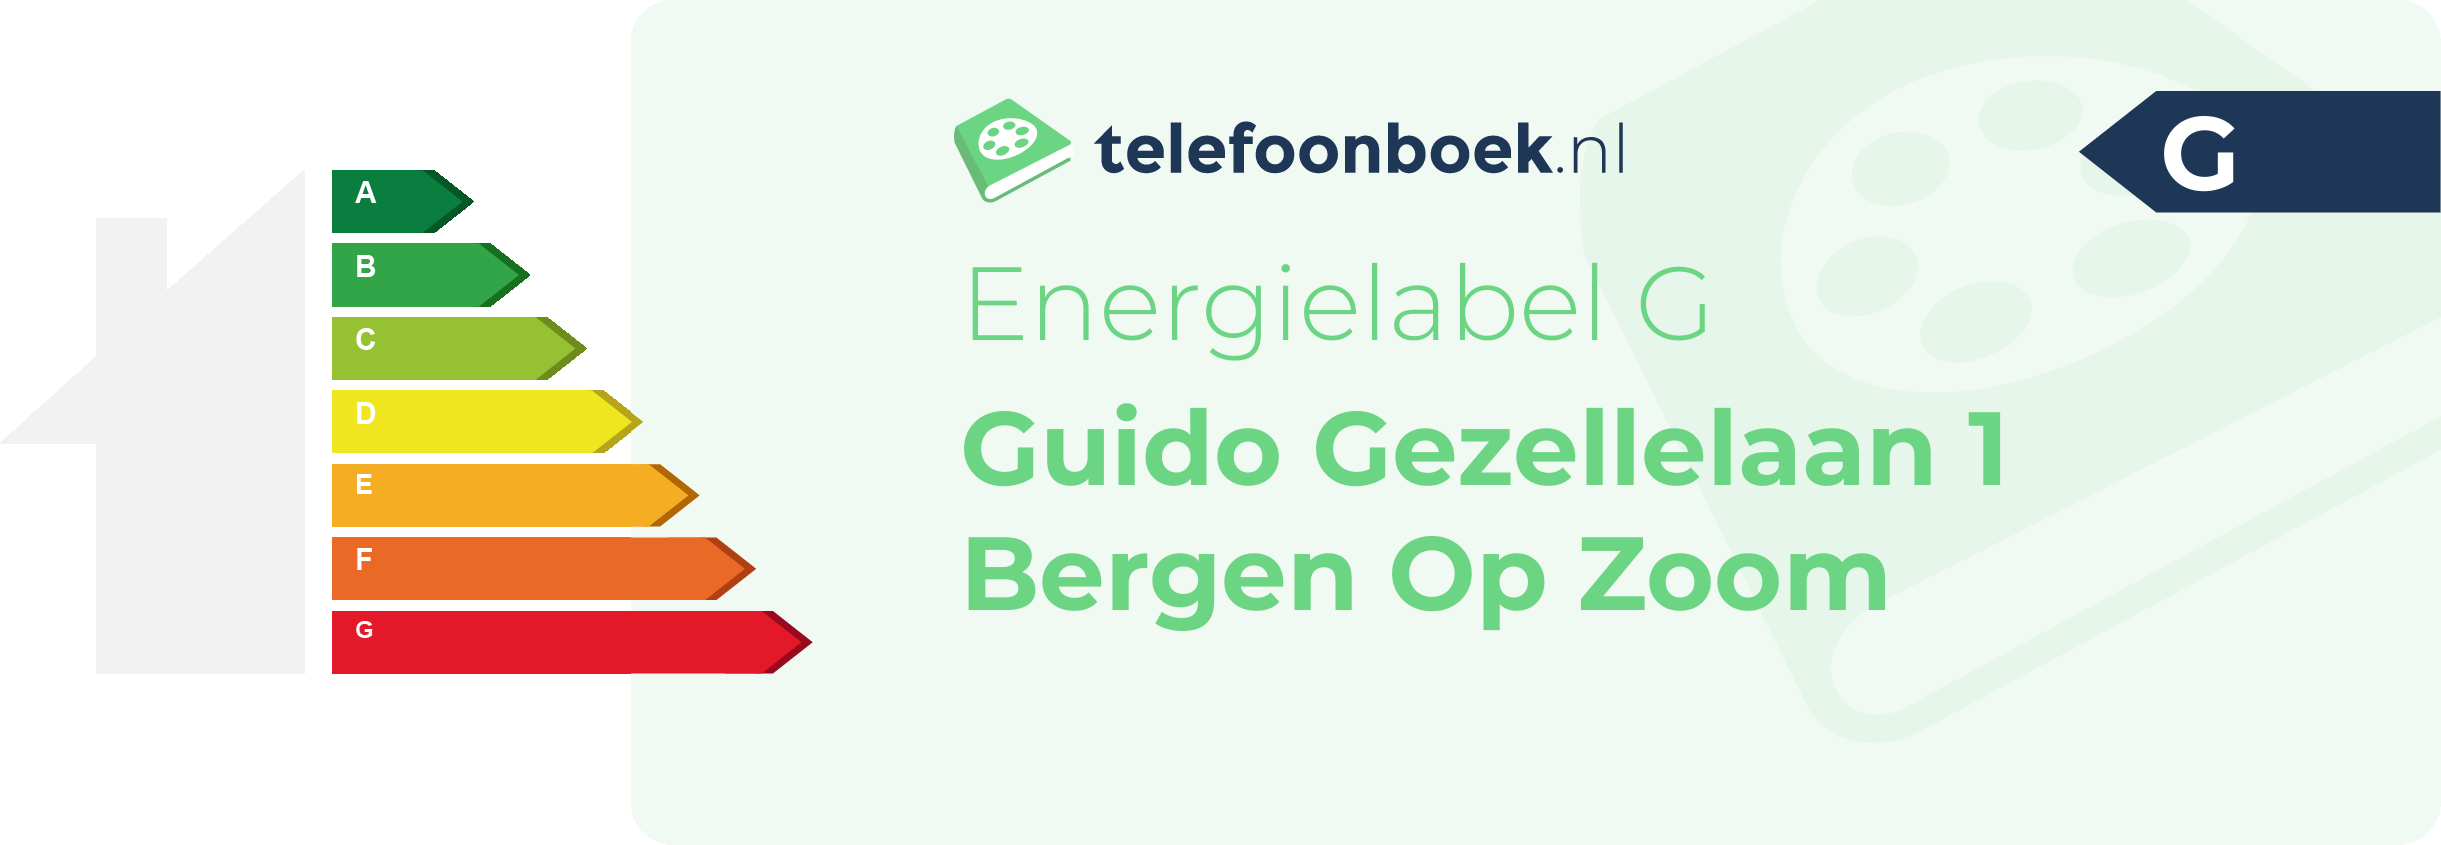 Energielabel Guido Gezellelaan 1 Bergen Op Zoom